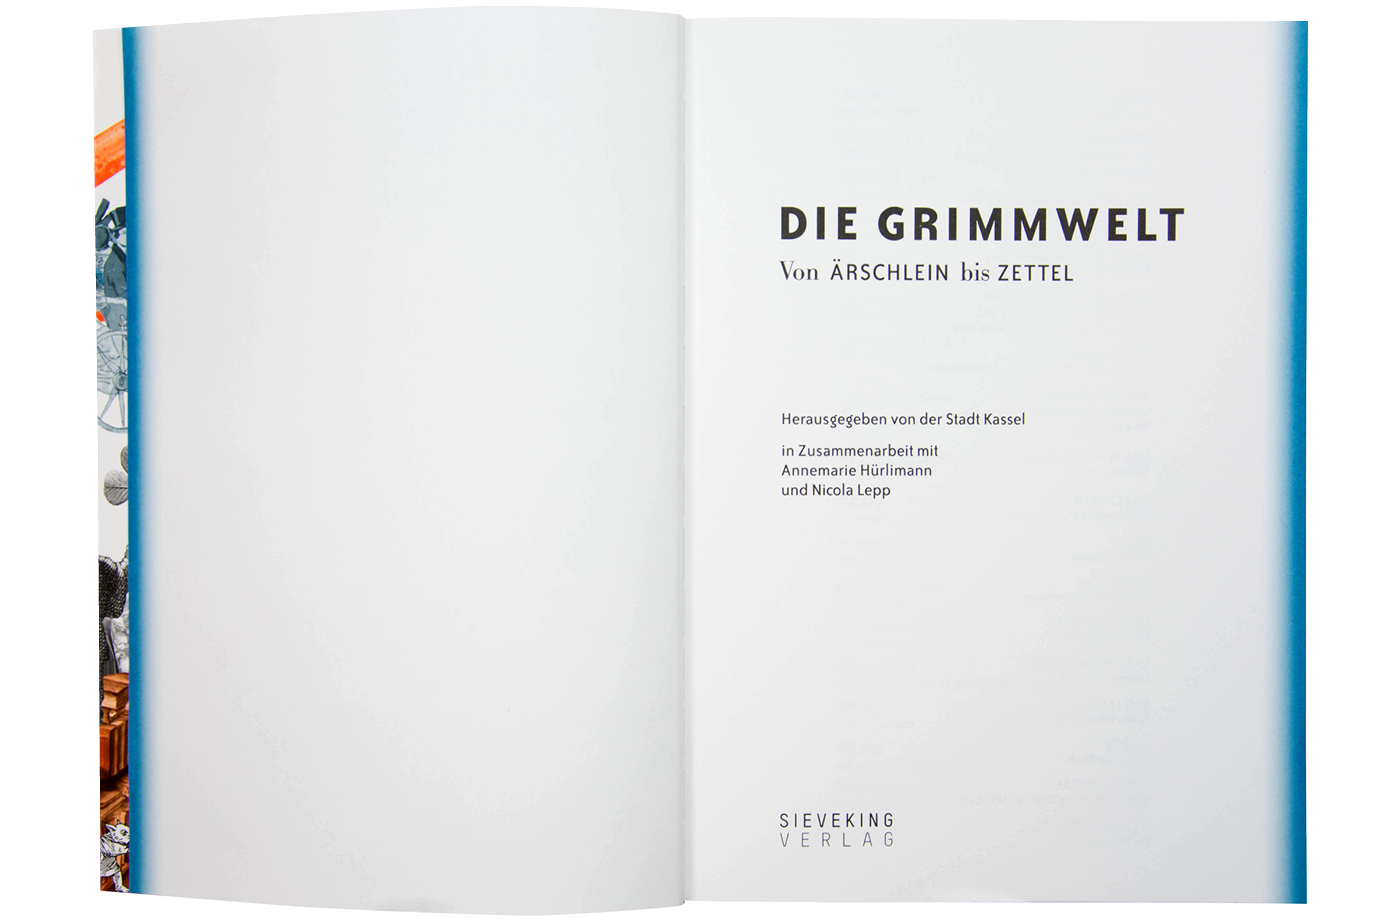 https://e-o-t.de/wordpress/wp-content/uploads/2017/05/2015_eot-Grimmwelt-Book-03.jpg